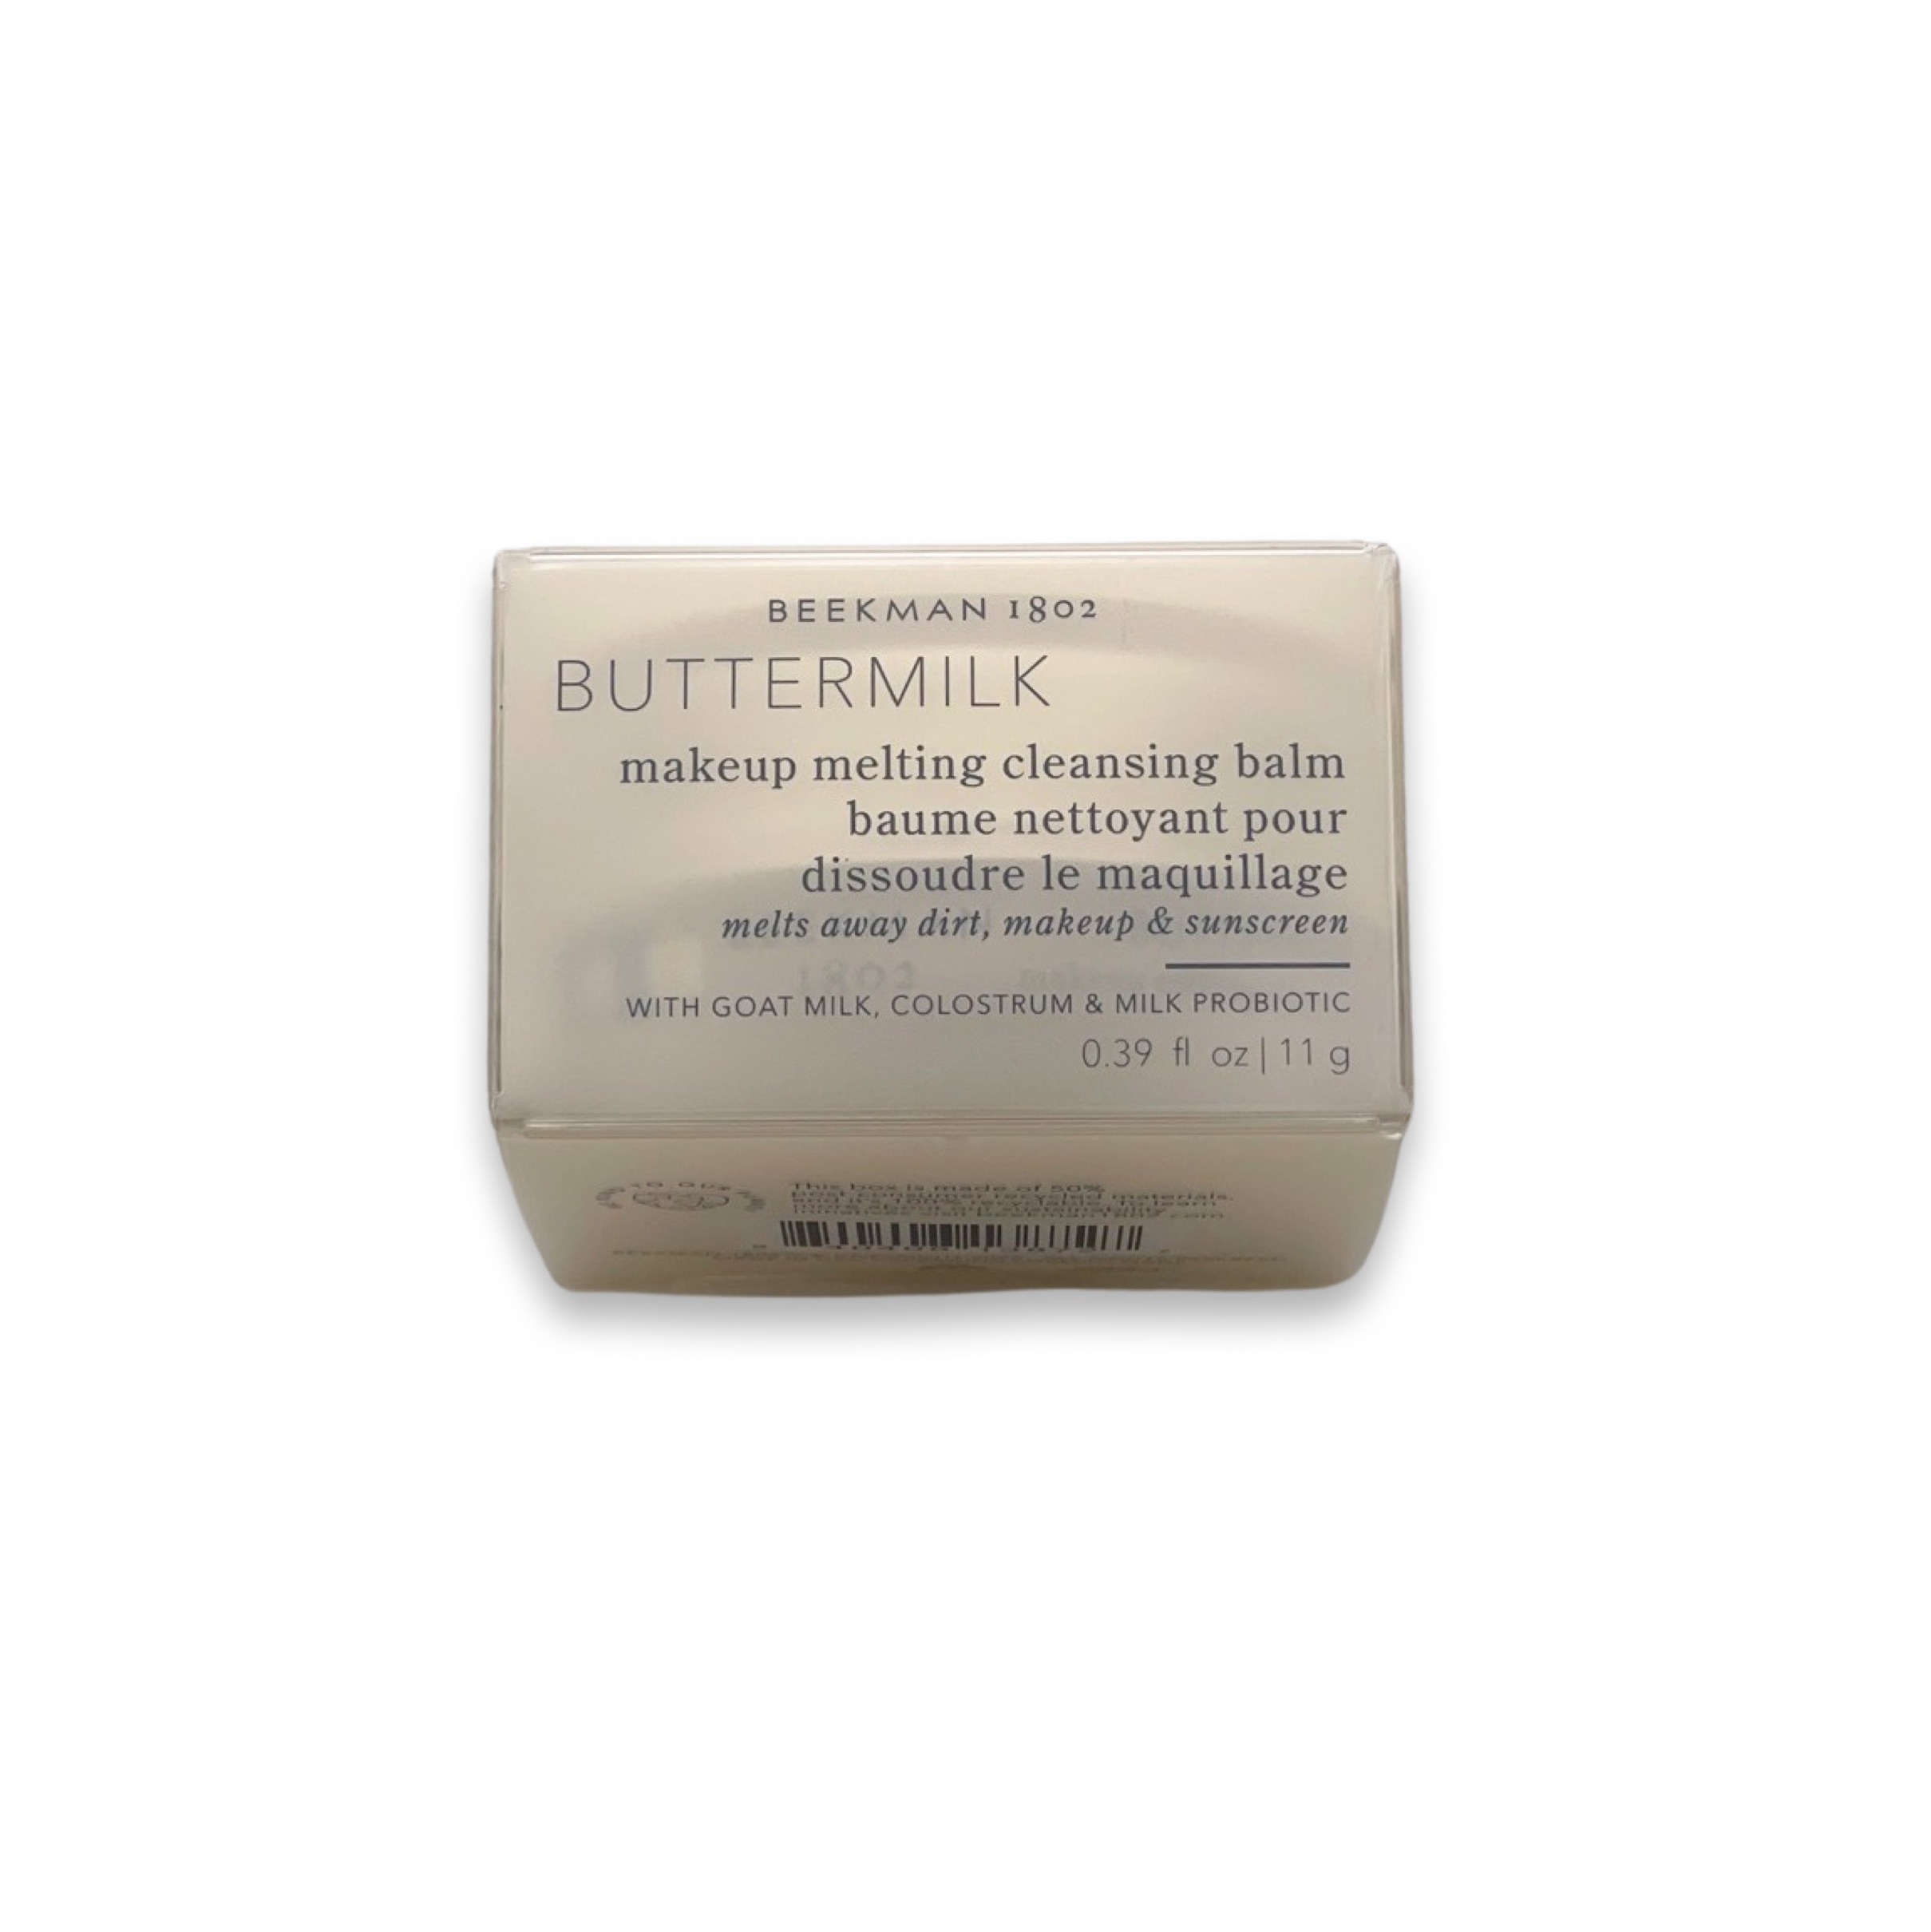 Beekman 1802 Buttermilk Makeup Cleansing Balm / Travel Size (11g)